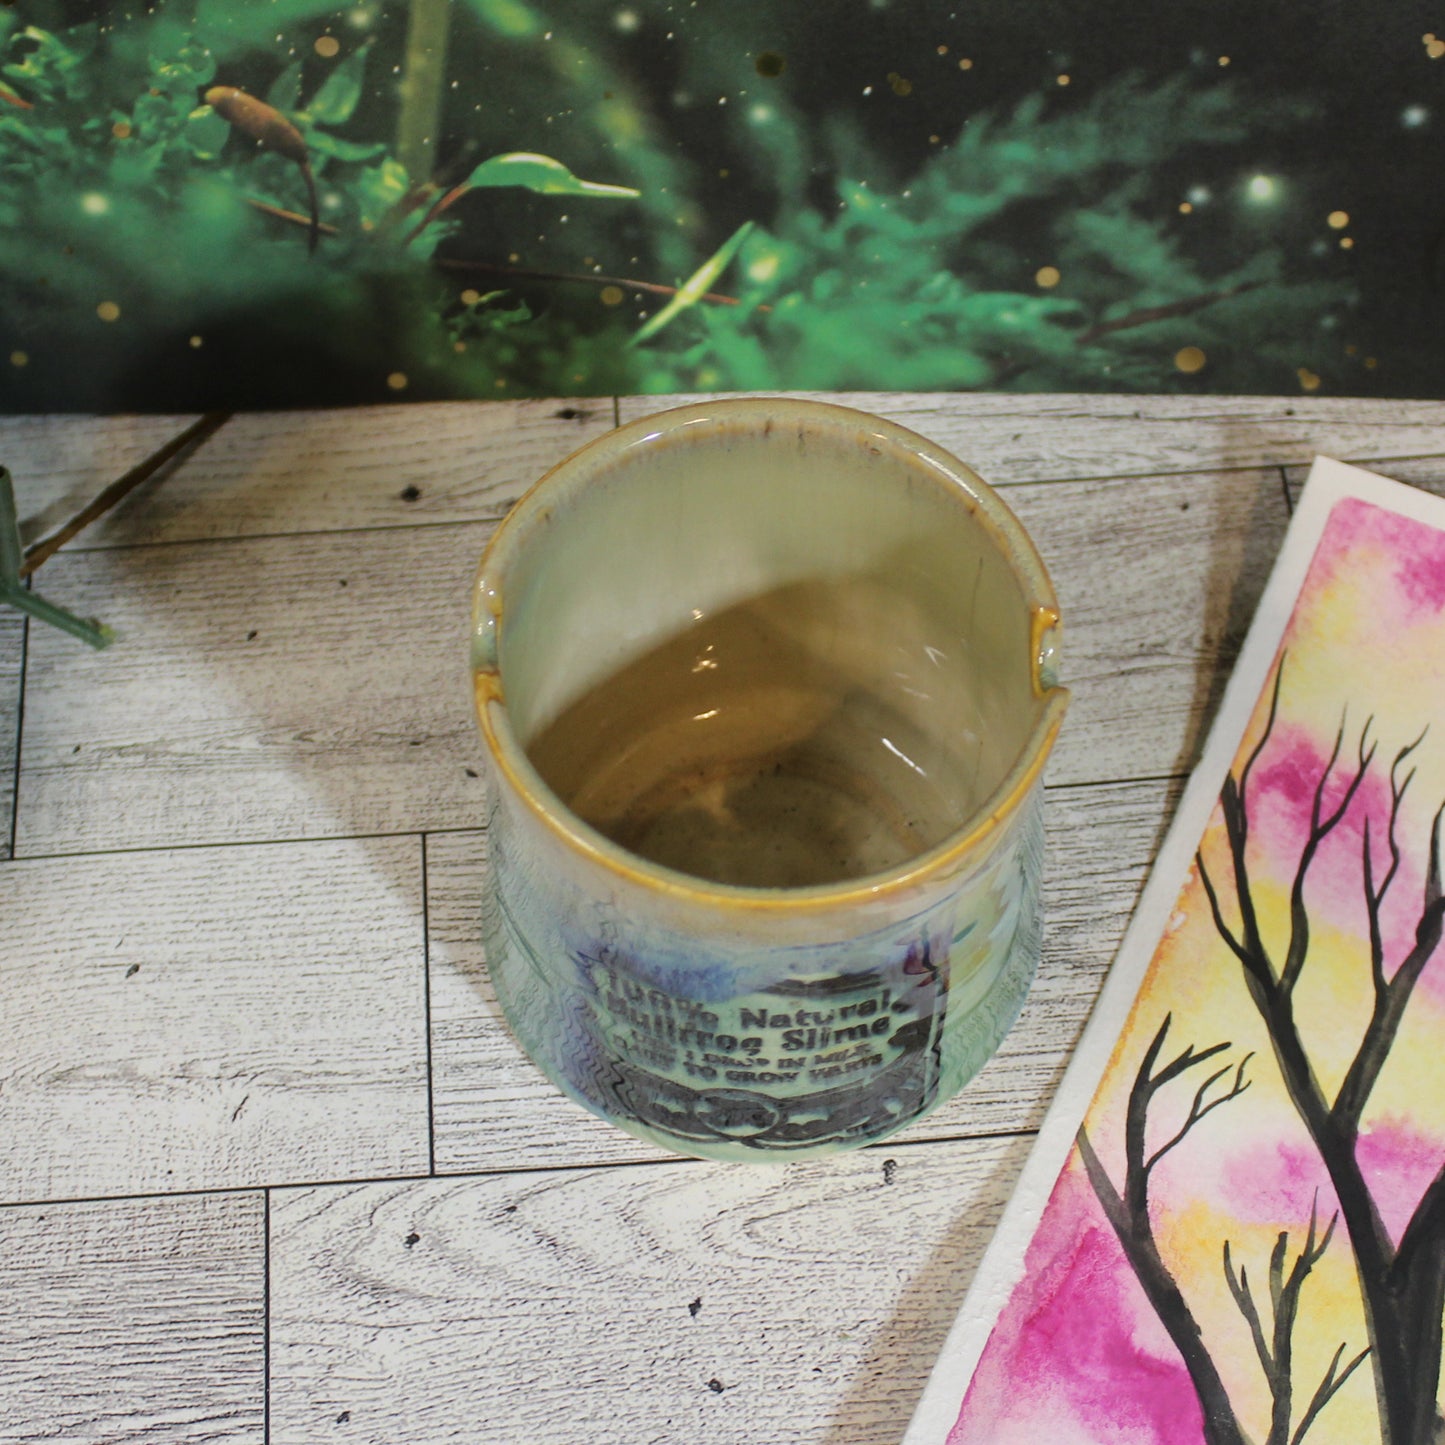 Paint Water Cup "Bullfrog Slime"